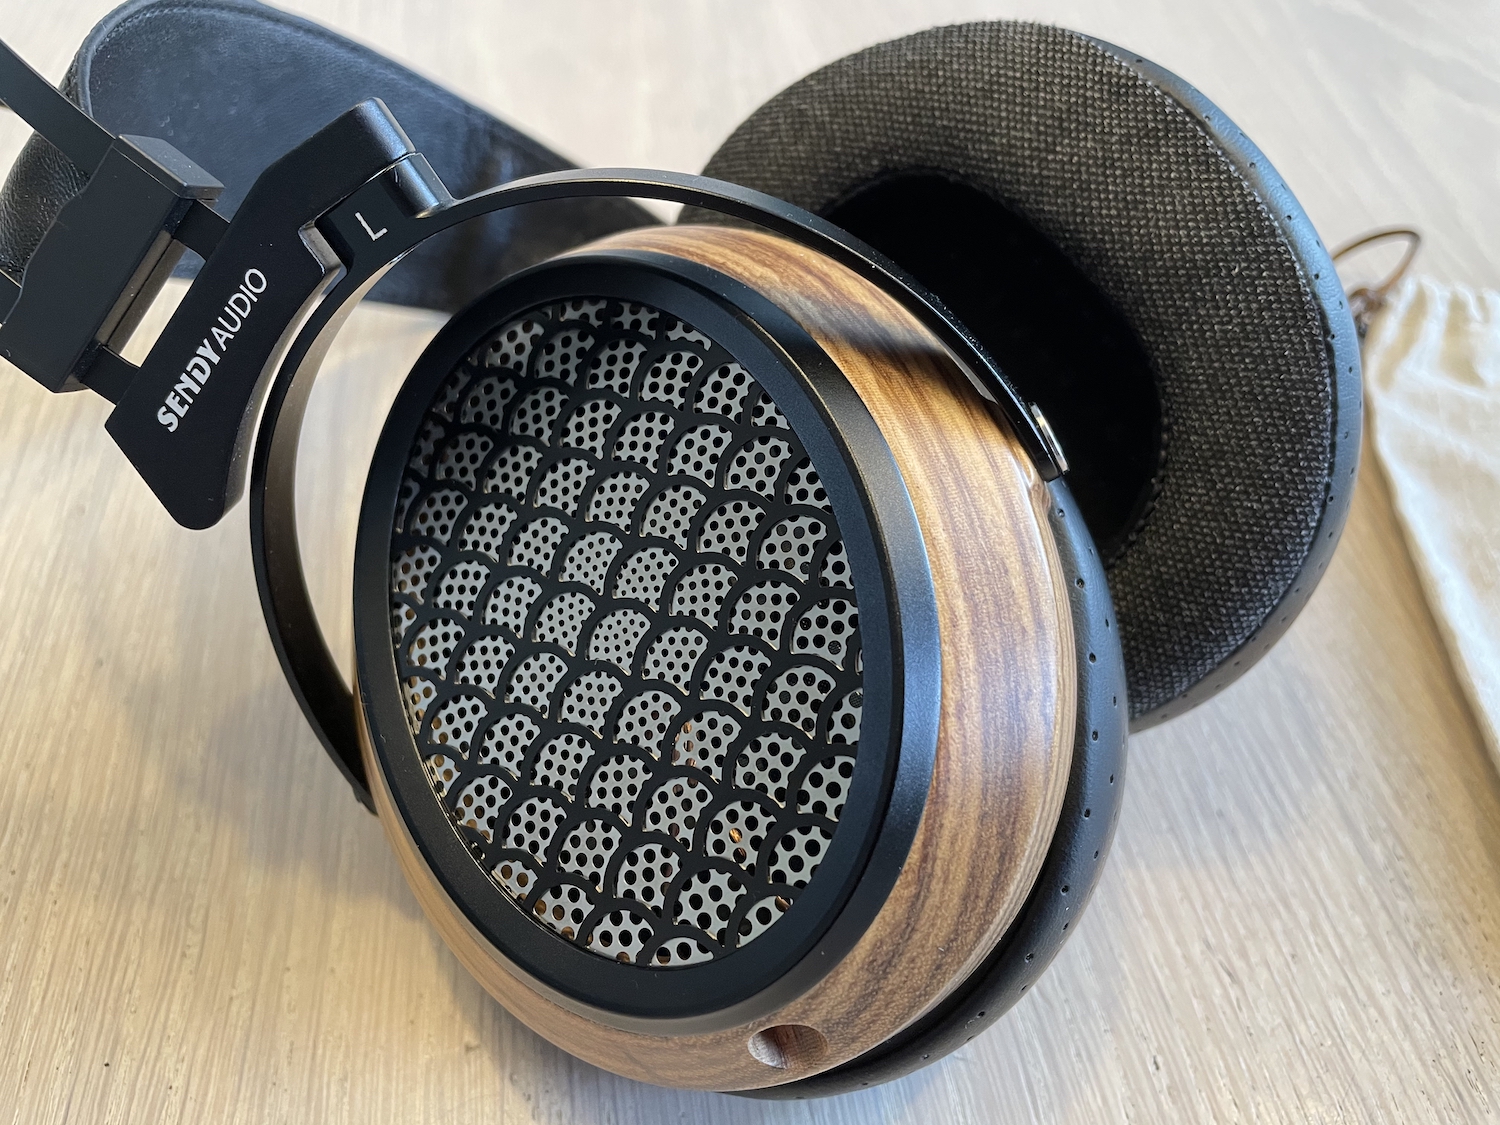 Politiebureau Aangepaste Smeren Review Sendy Audio Aiva, head fi met een premium design